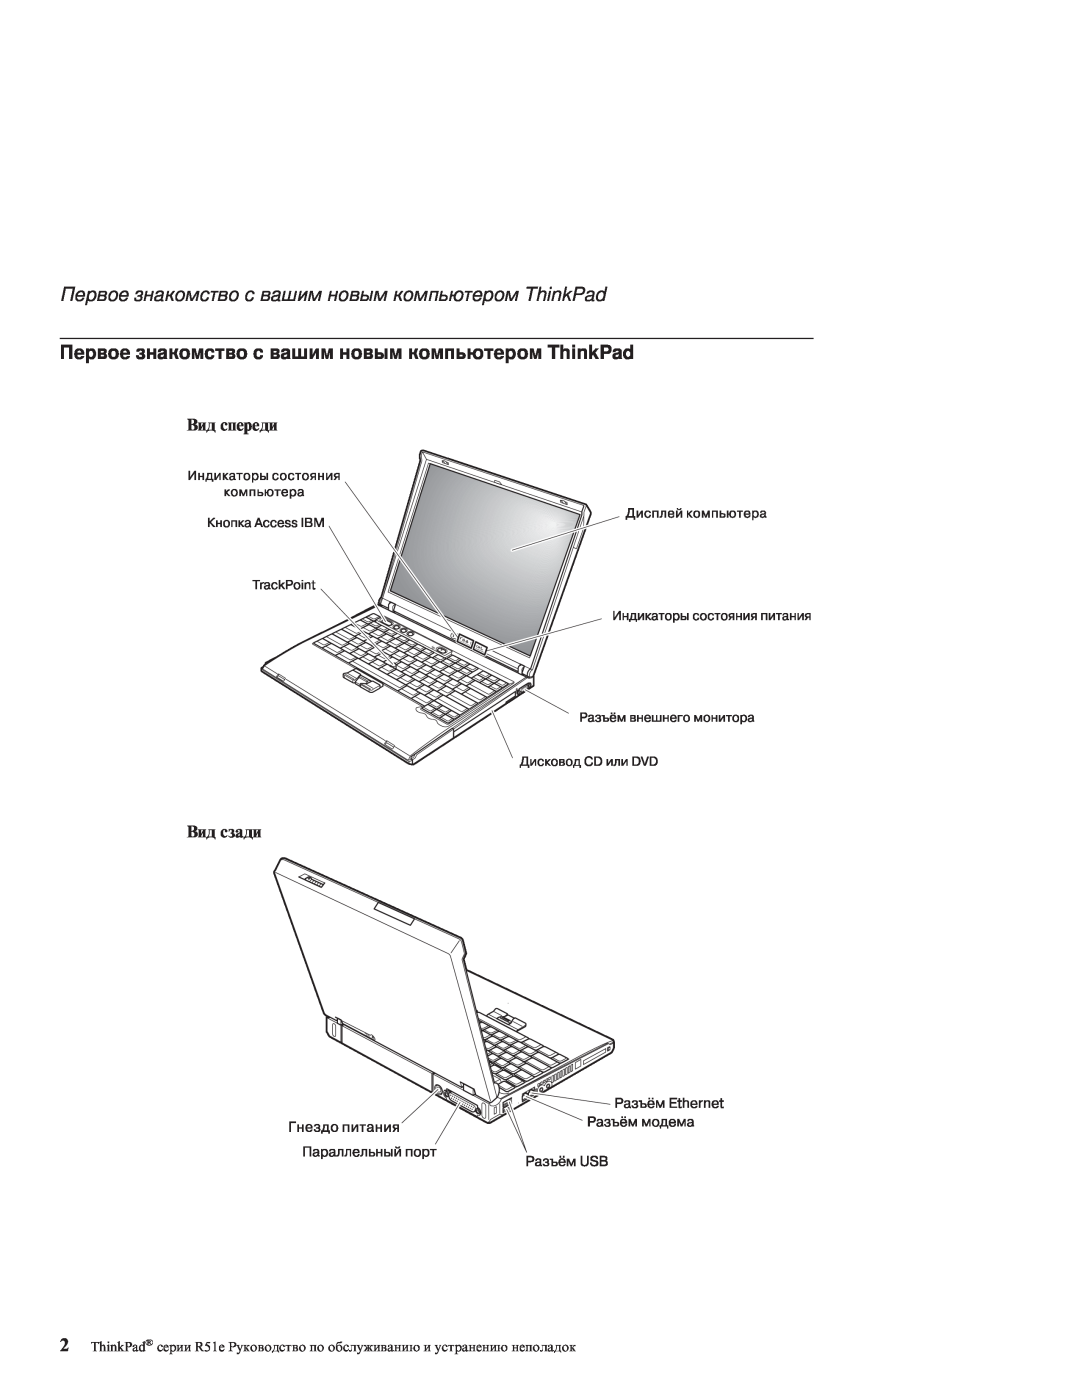 IBM R51E manual Первое знакомство с вашим новым компьютером ThinkPad, Вид спереди Вид сзади 